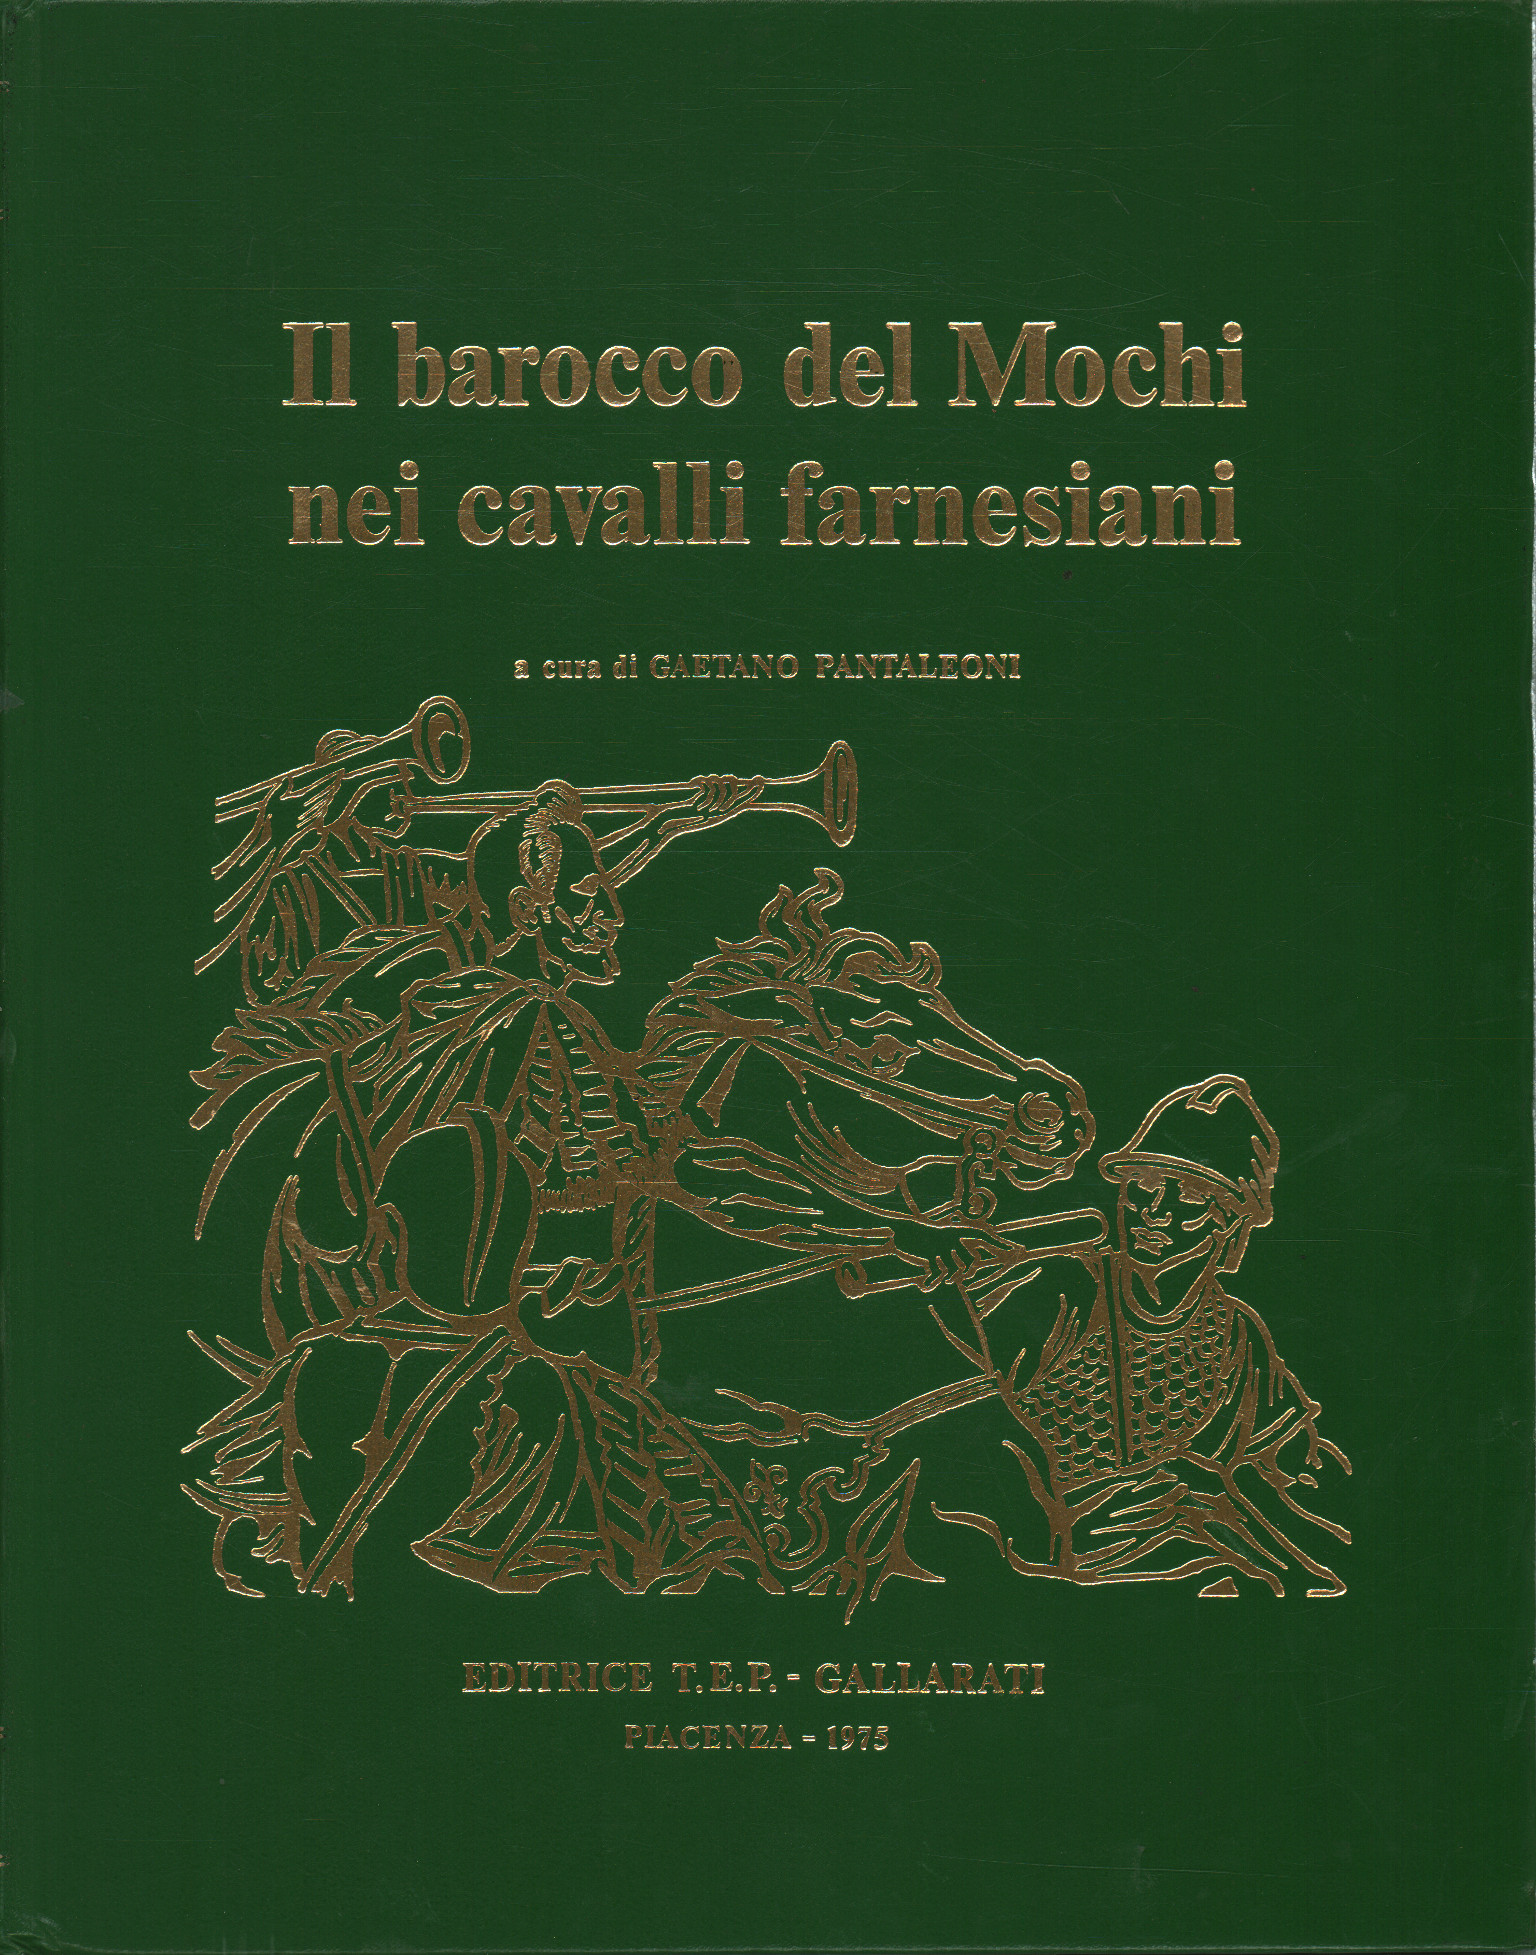 Il barocco del Mochi nei cavalli farnesiani, Gaetano Pantaleoni